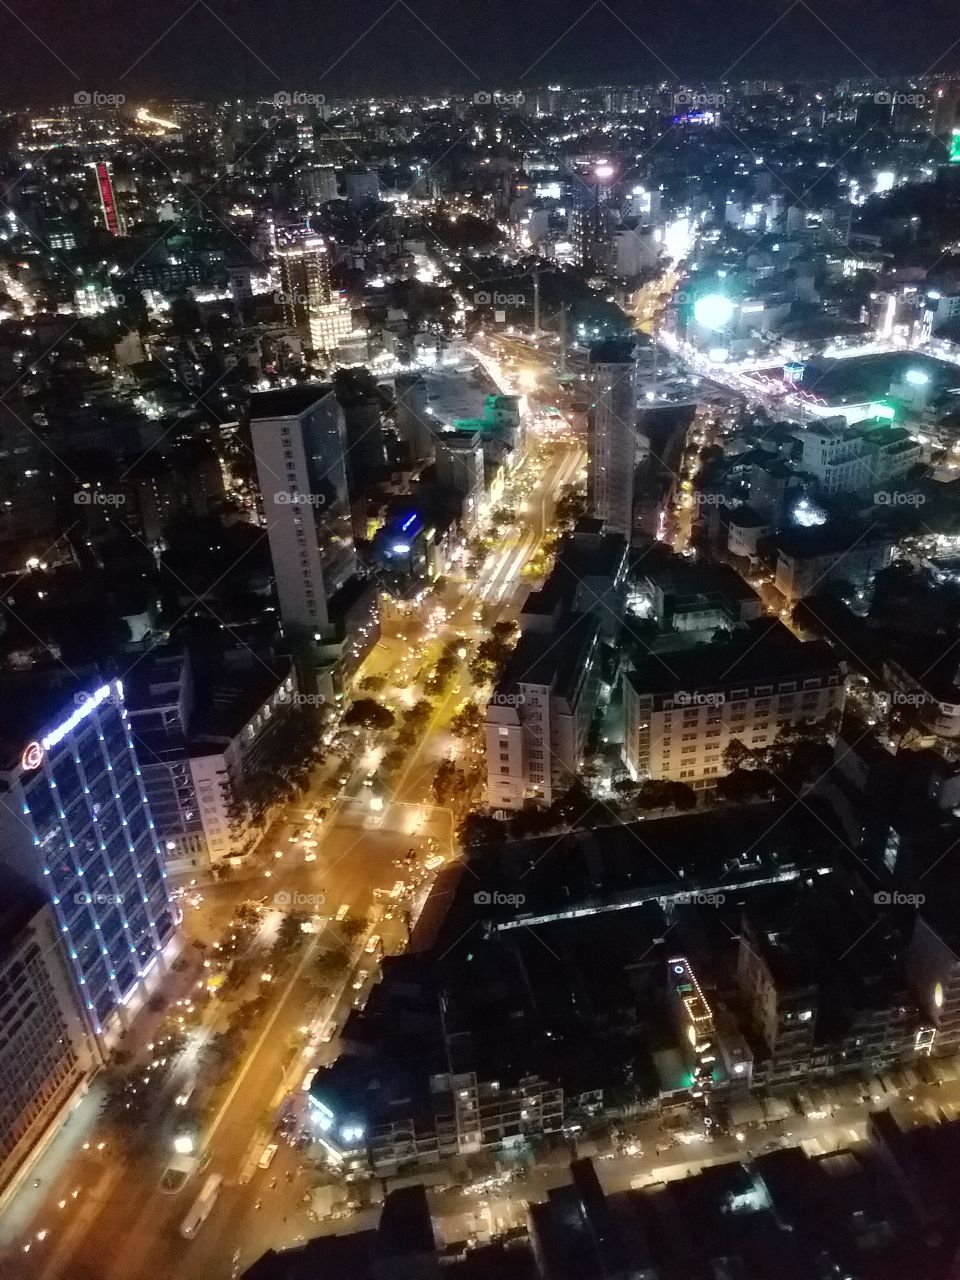 Saigon from the 49th floor